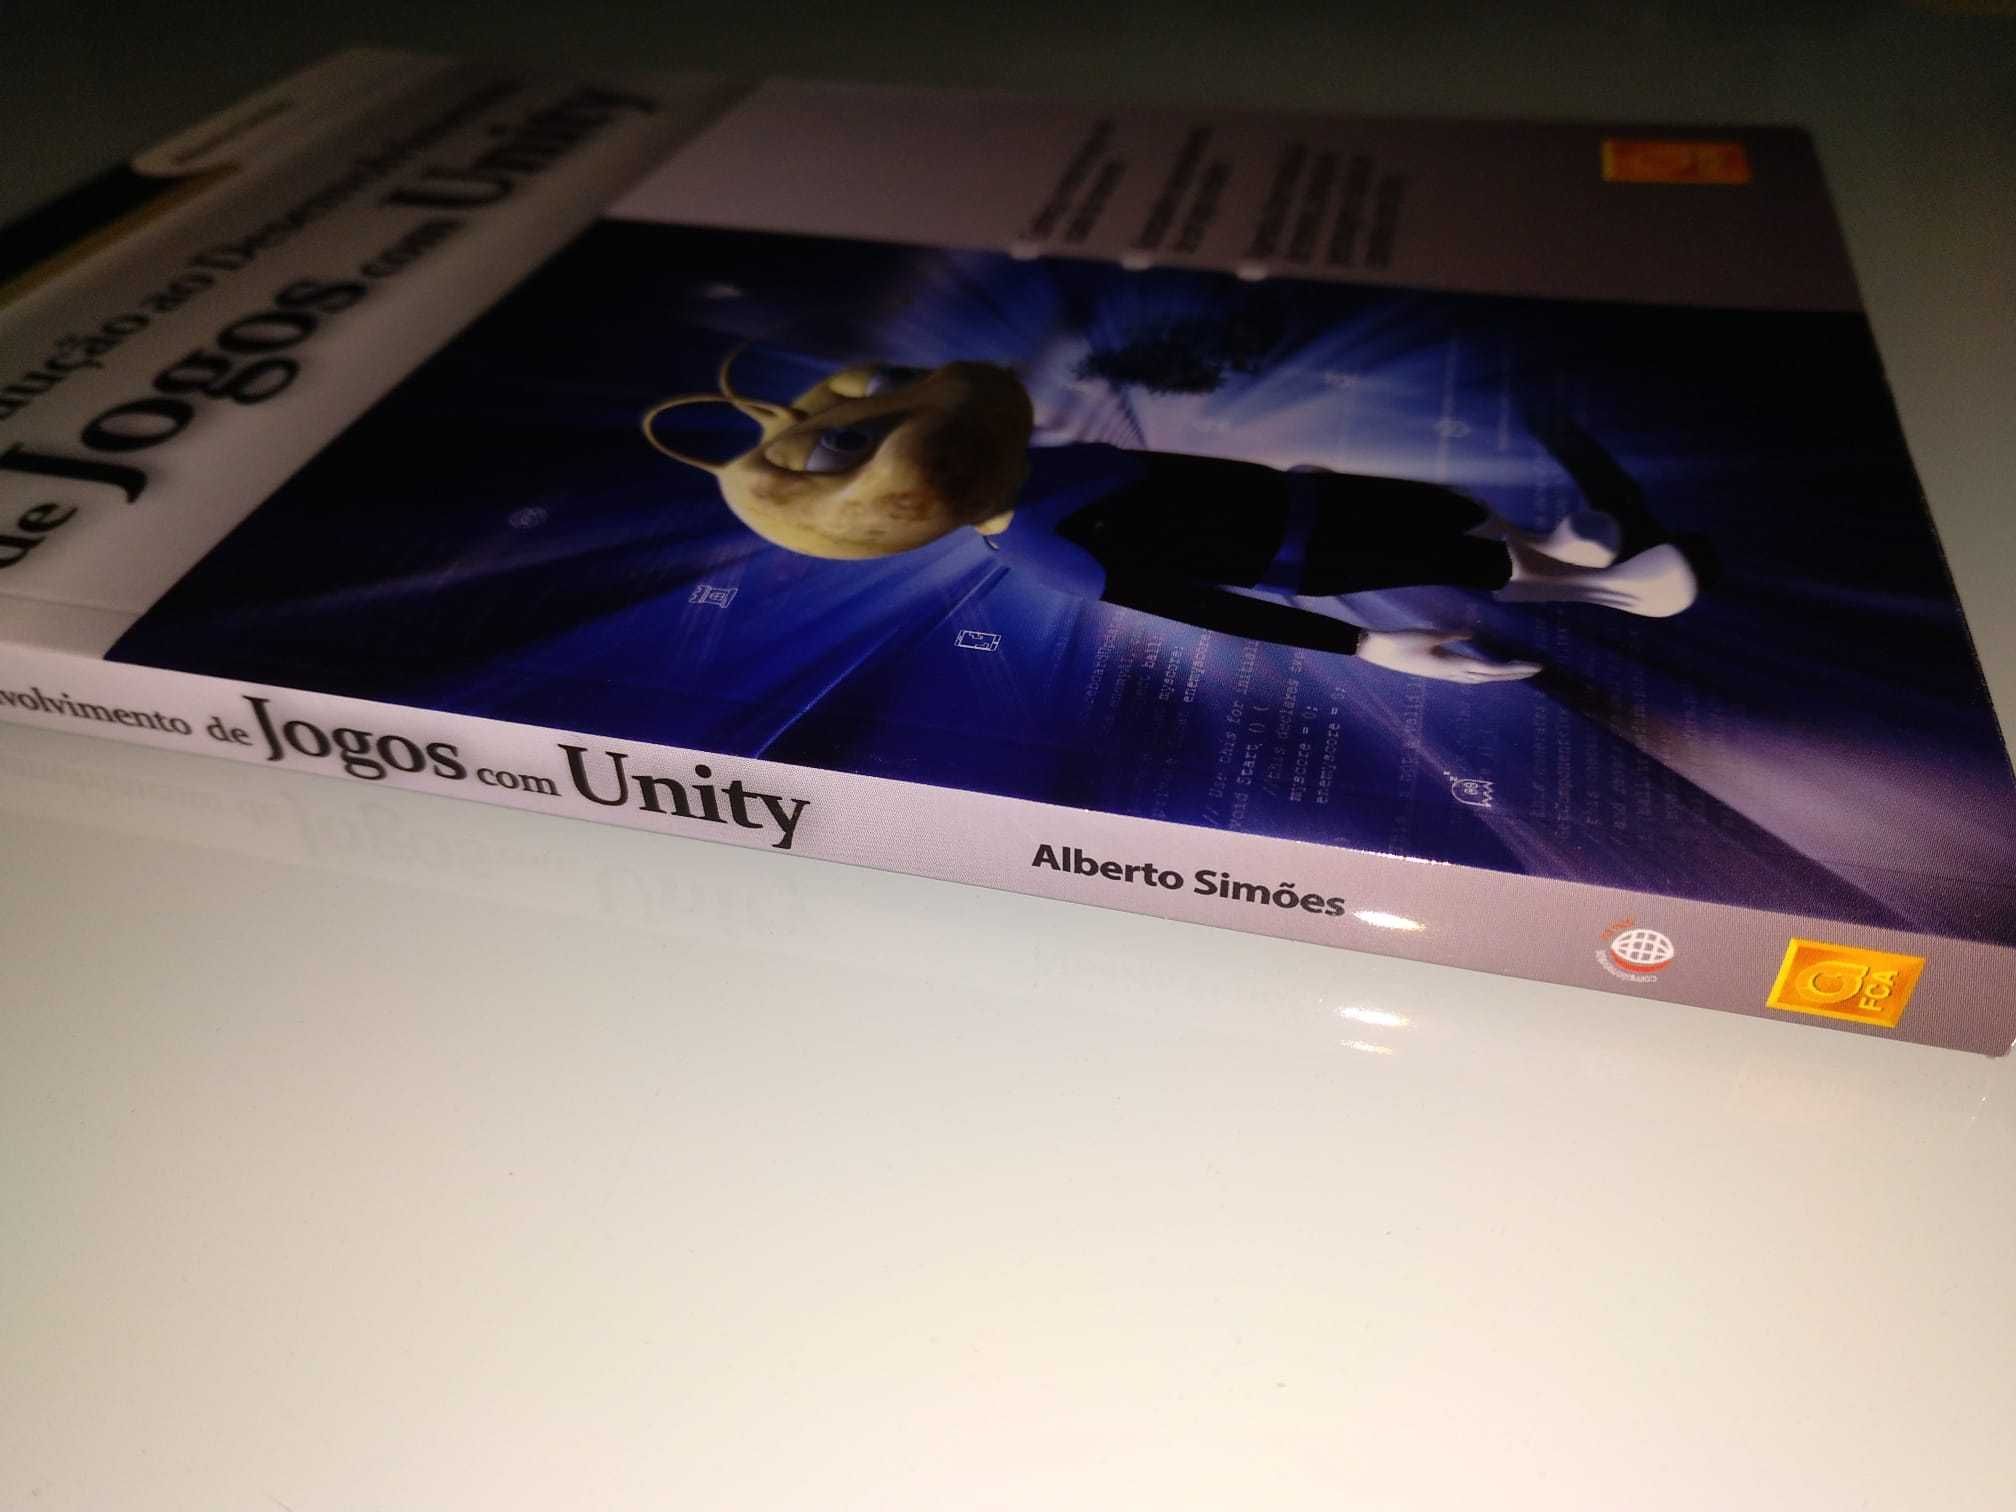 Livro "Introdução ao Desenvolvimento de Jogos com Unity" (FCA)